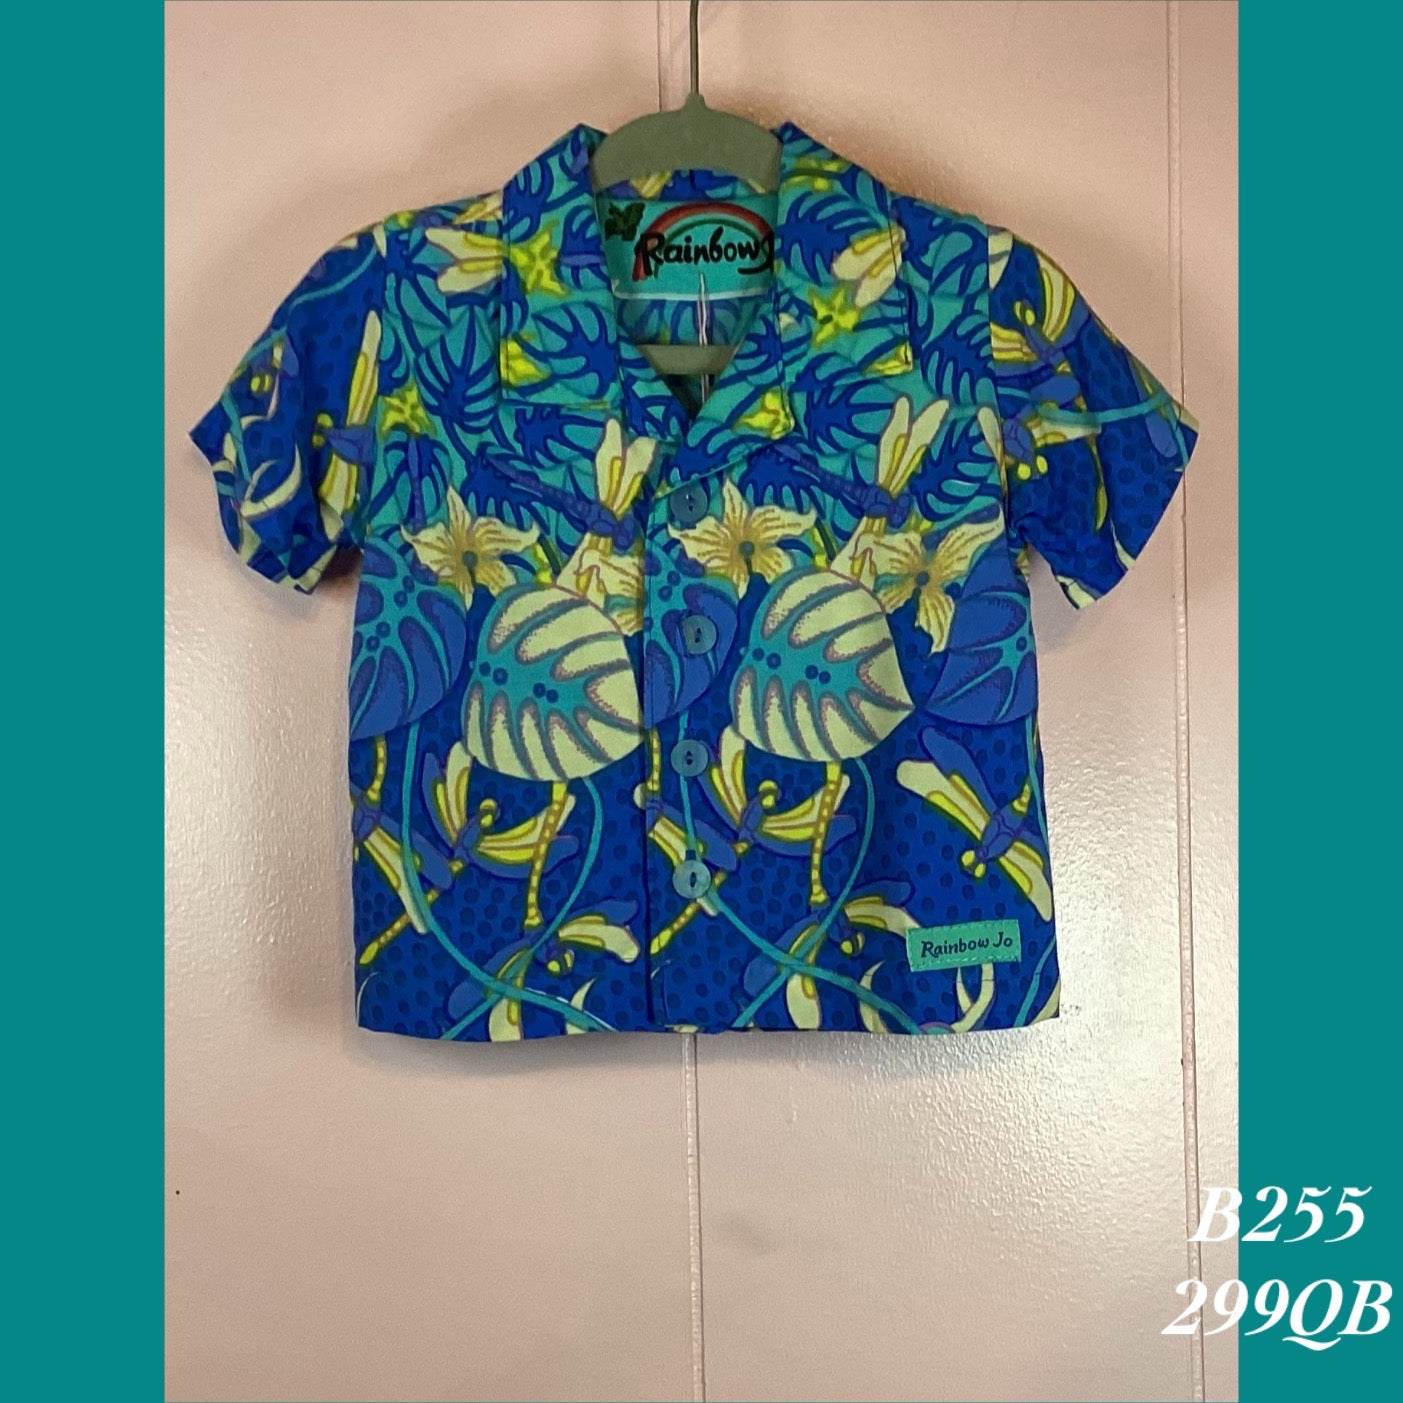 B255 - 299QB , Baby boy's Aloha shirt